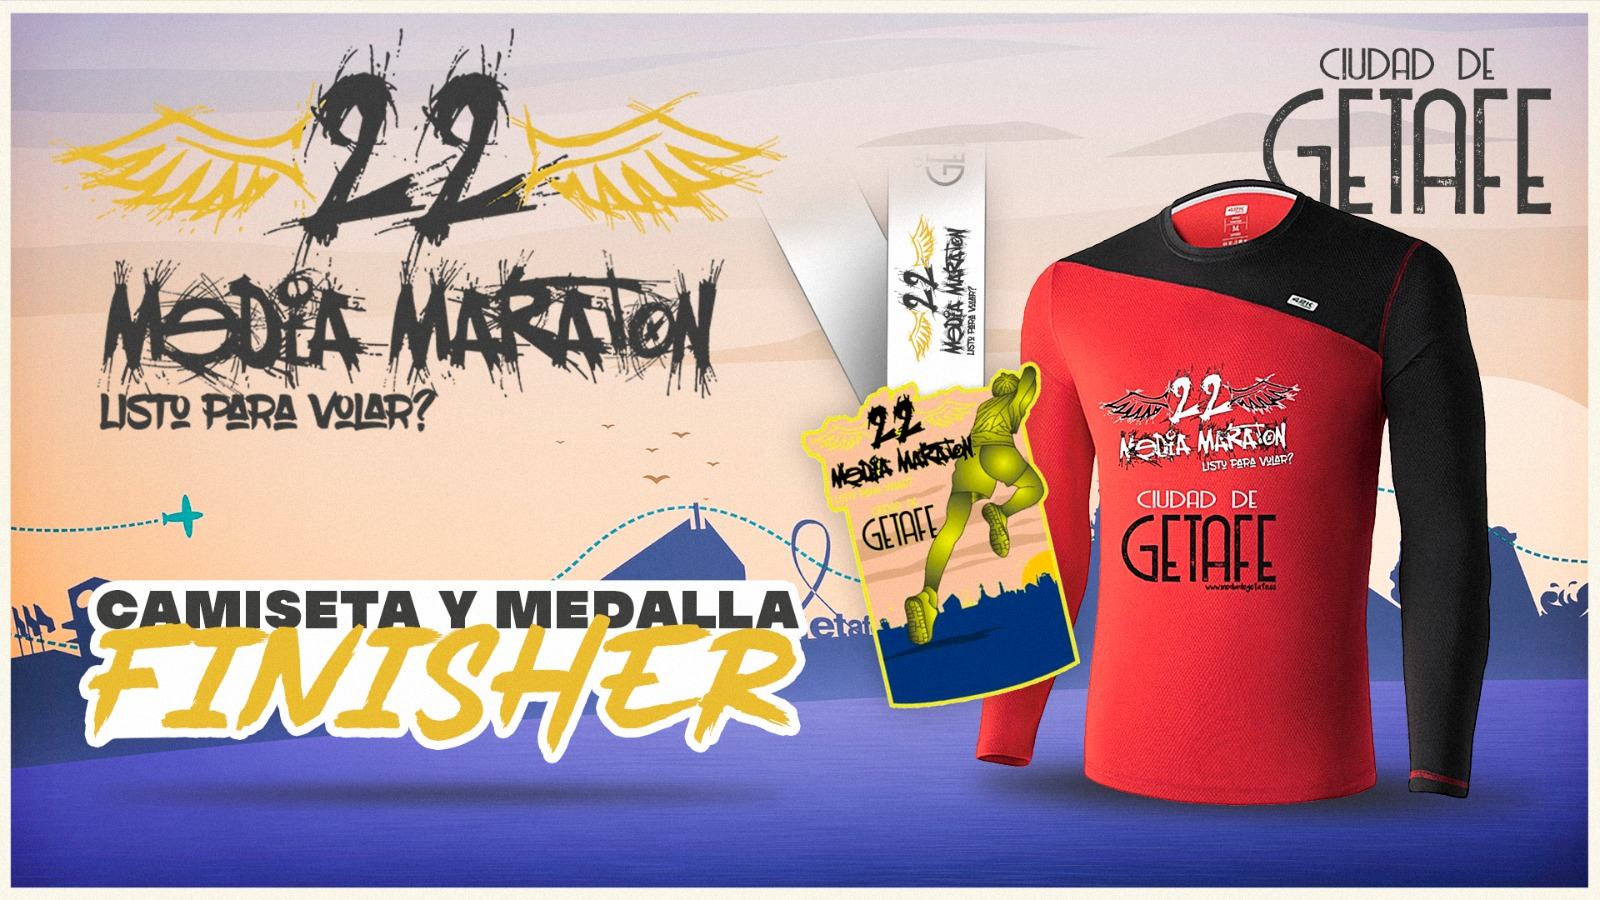 Bolsa del corredor 22 media maratón ciudad de Getafe